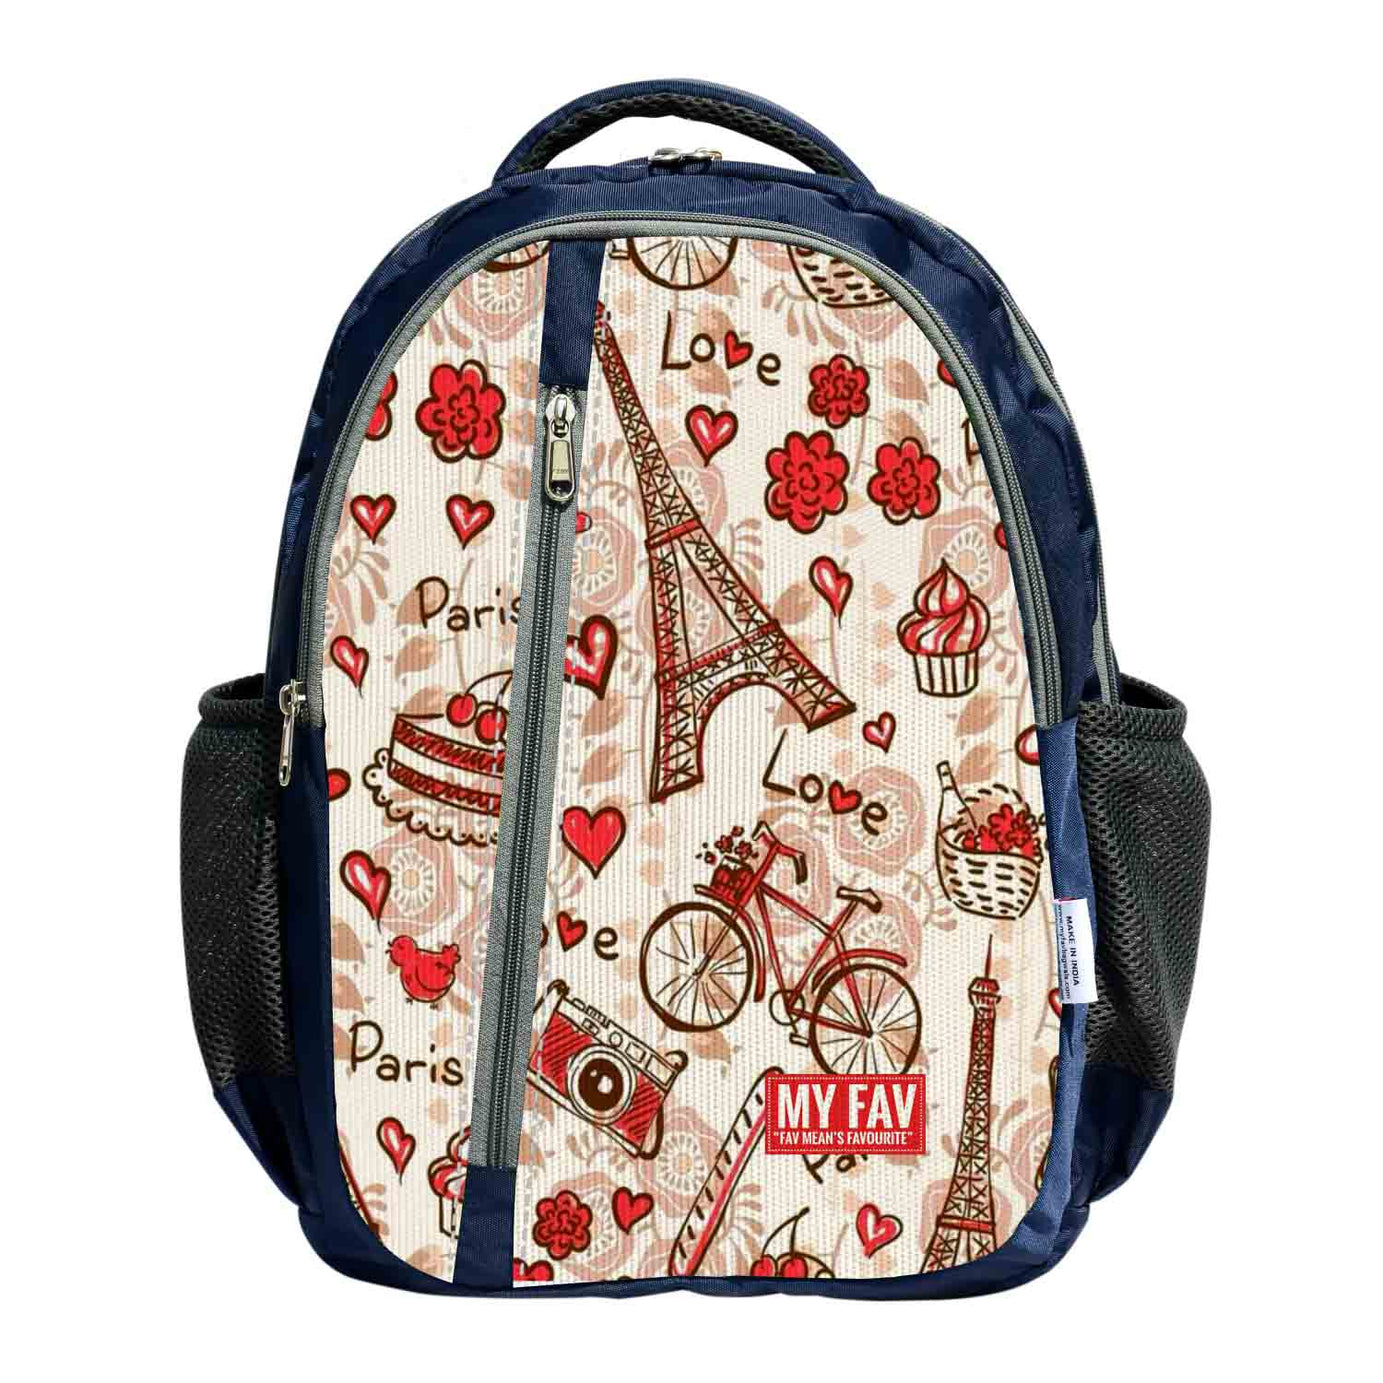 My Fav Paris Print Laptop Backpack For Men Women / School Bag For Boys Girls